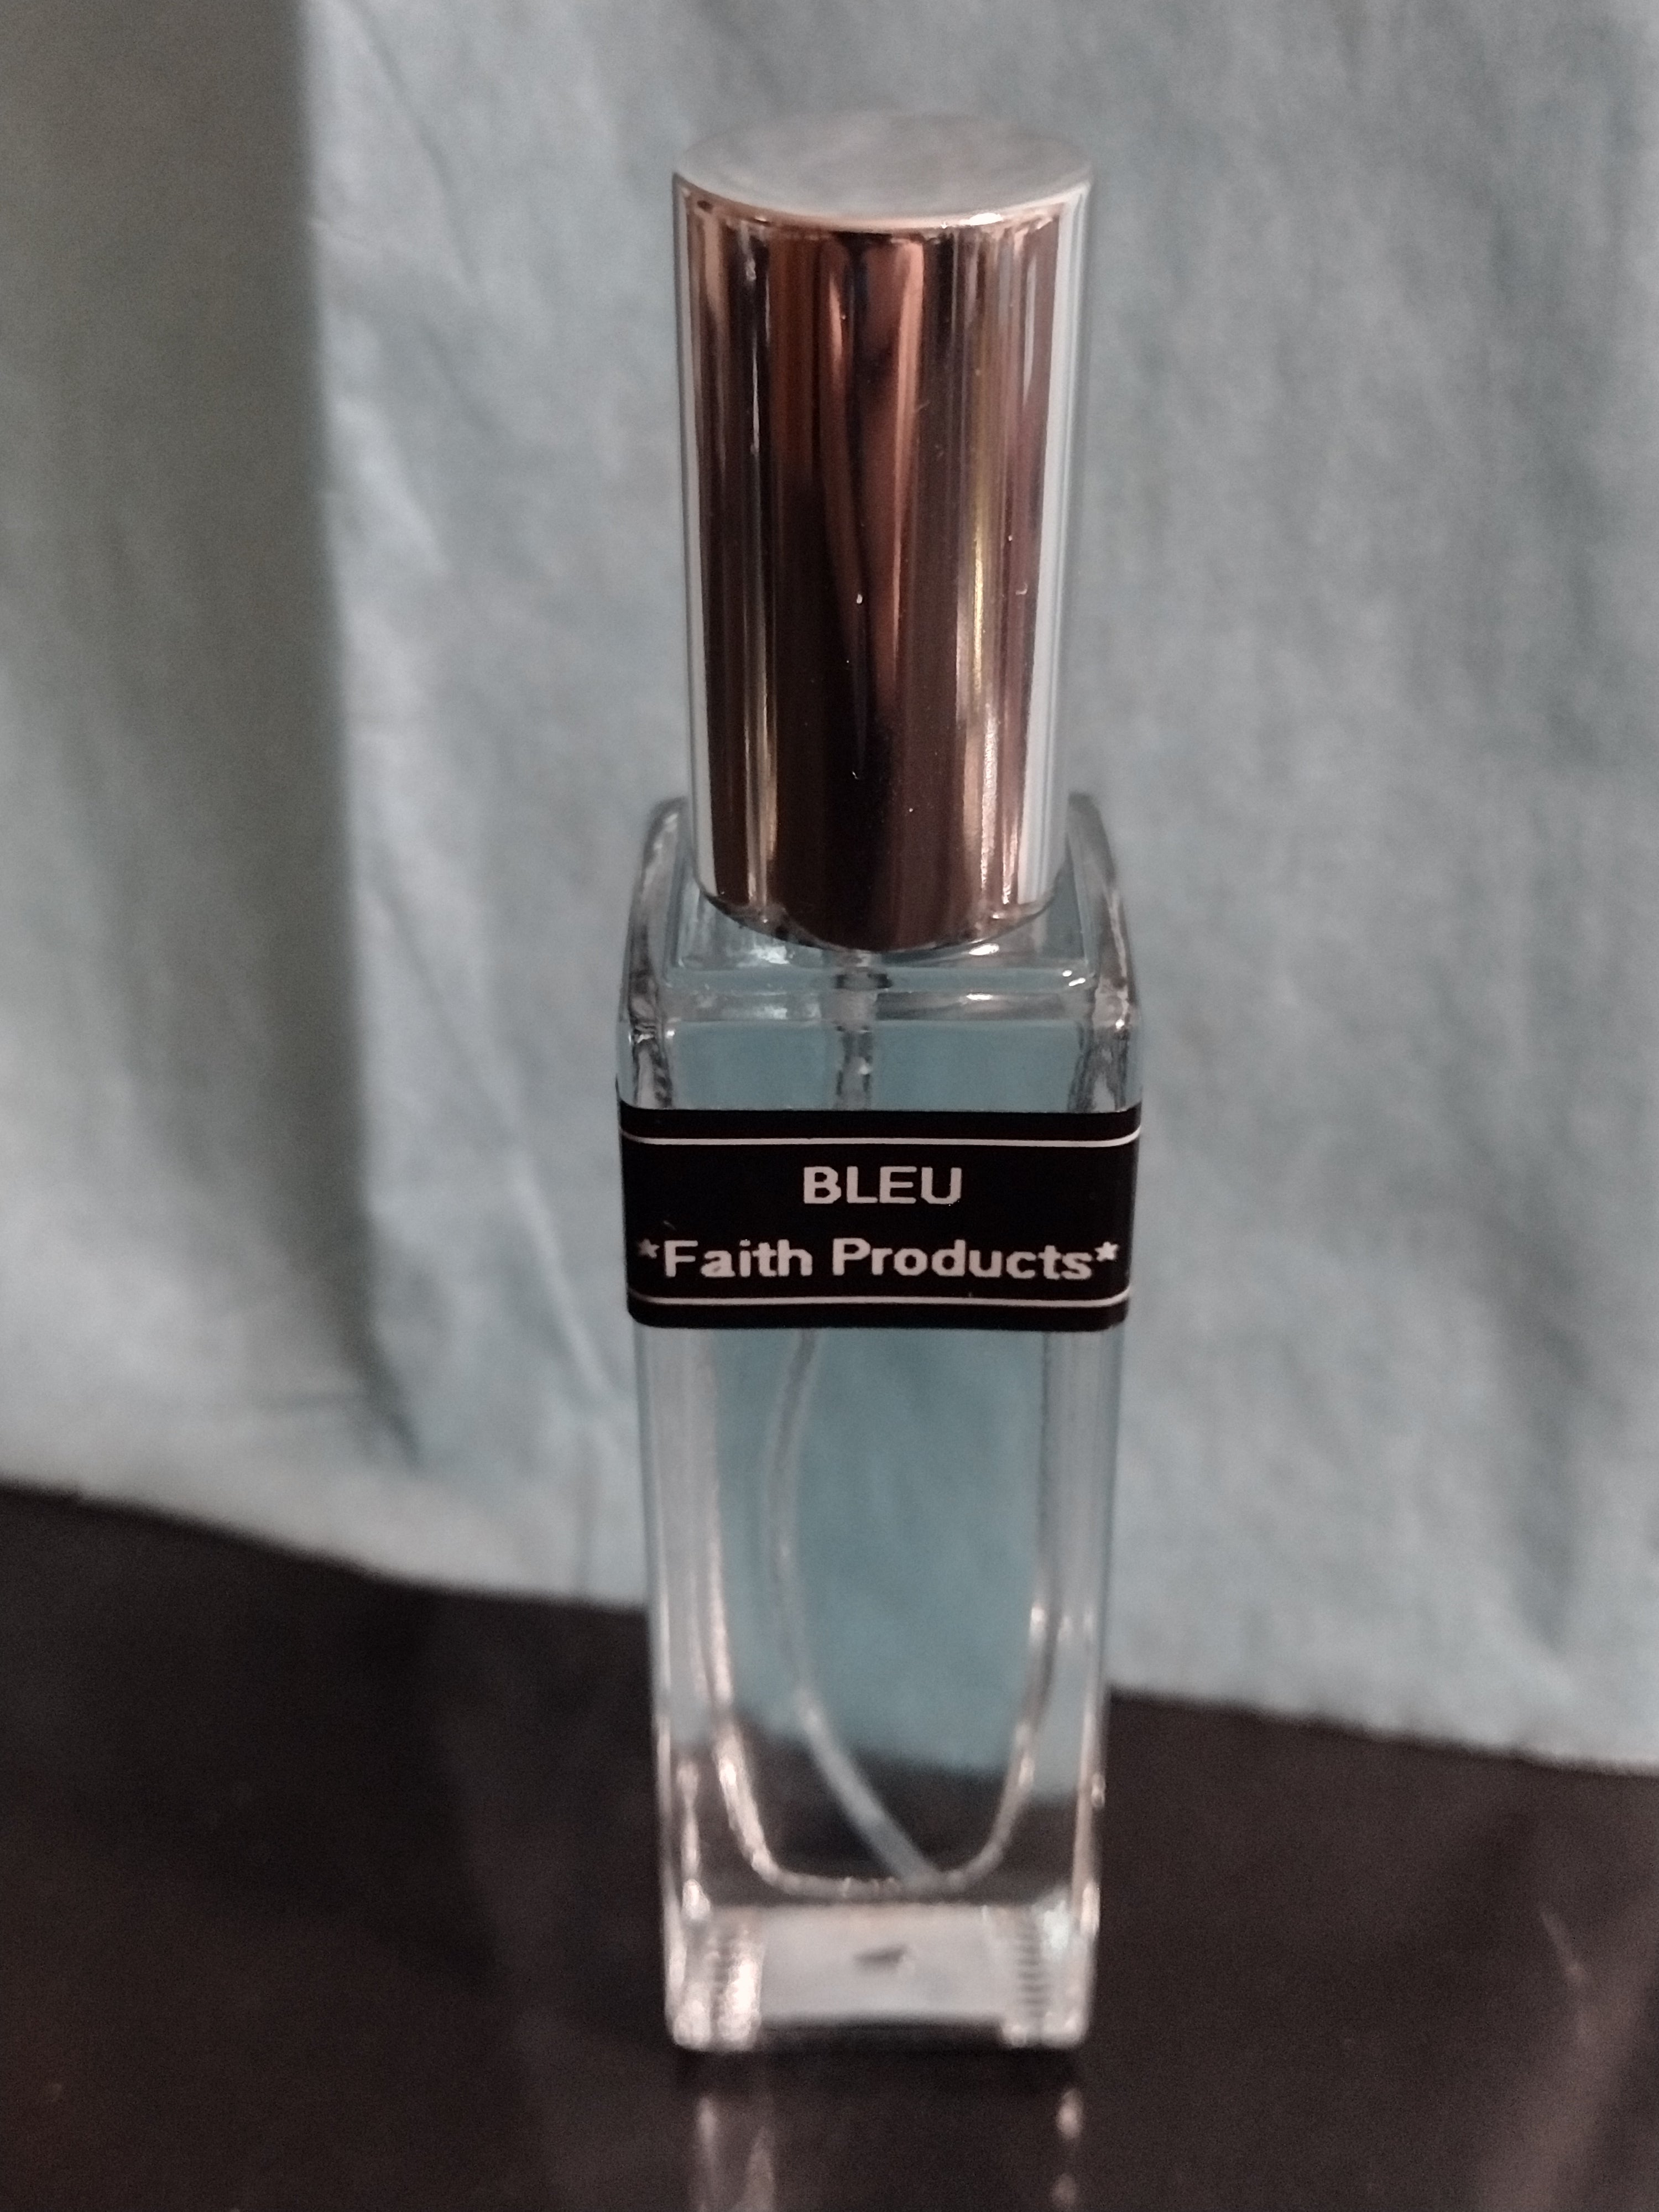 Bleu Men's Body Oil .6oz. Spray Bottle